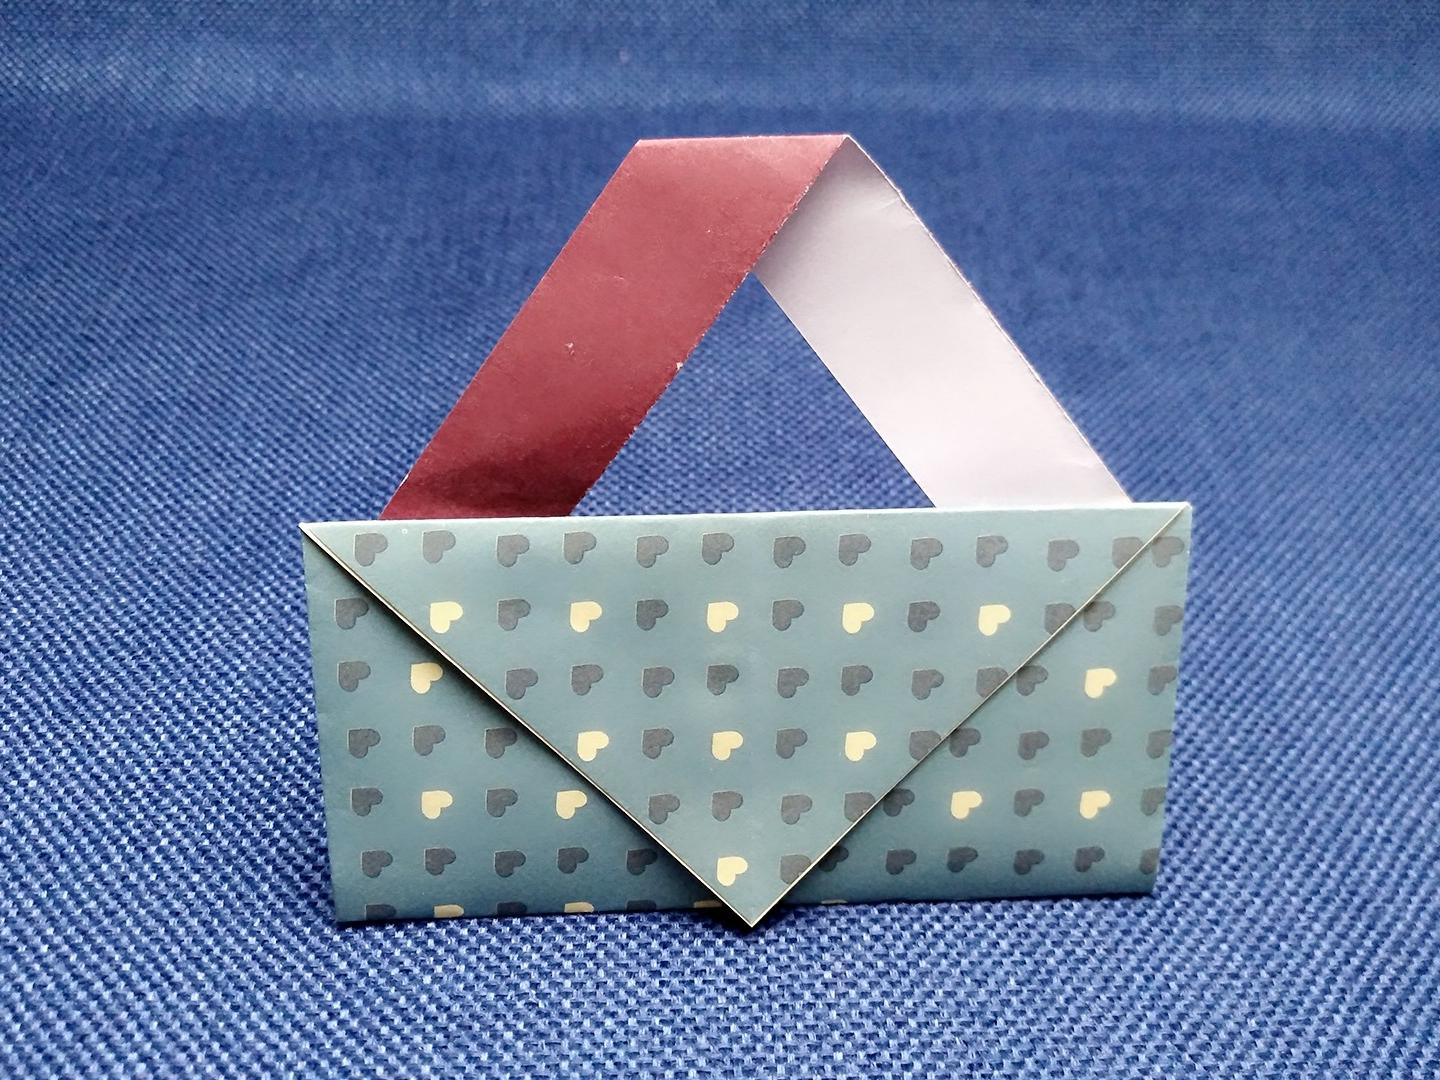 1漂亮可爱的手提包折法  04:32  来源:好看视频-教你用纸折可爱的小